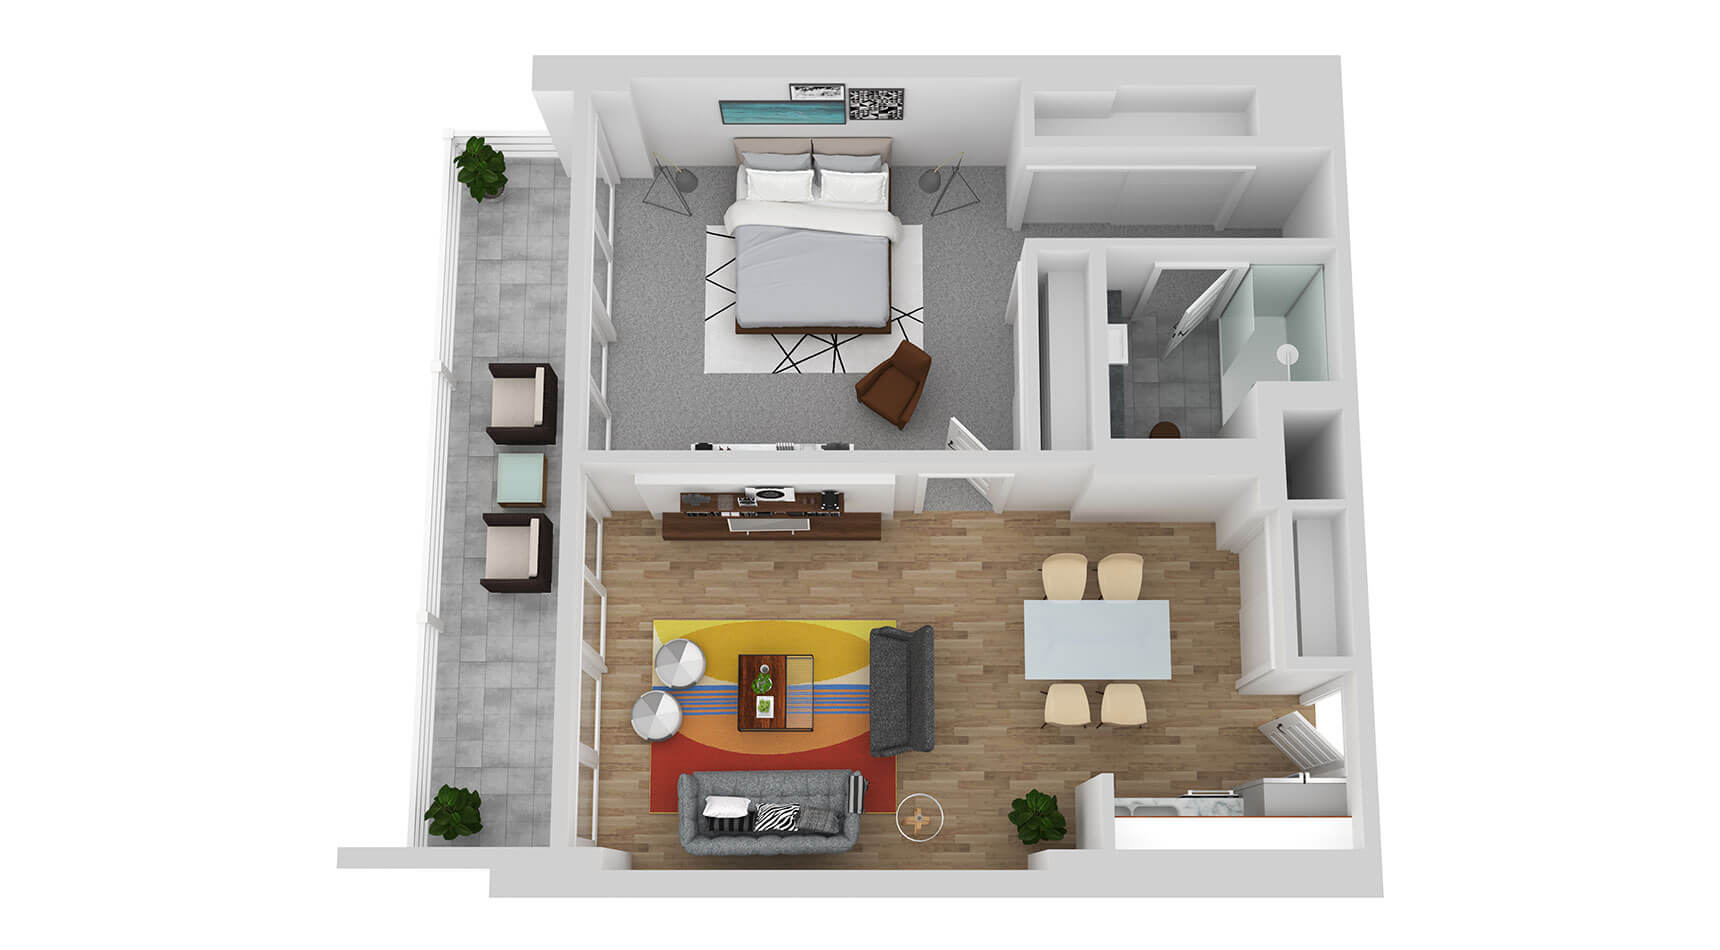 Typical Large One Bedroom Floor Plan Rendering